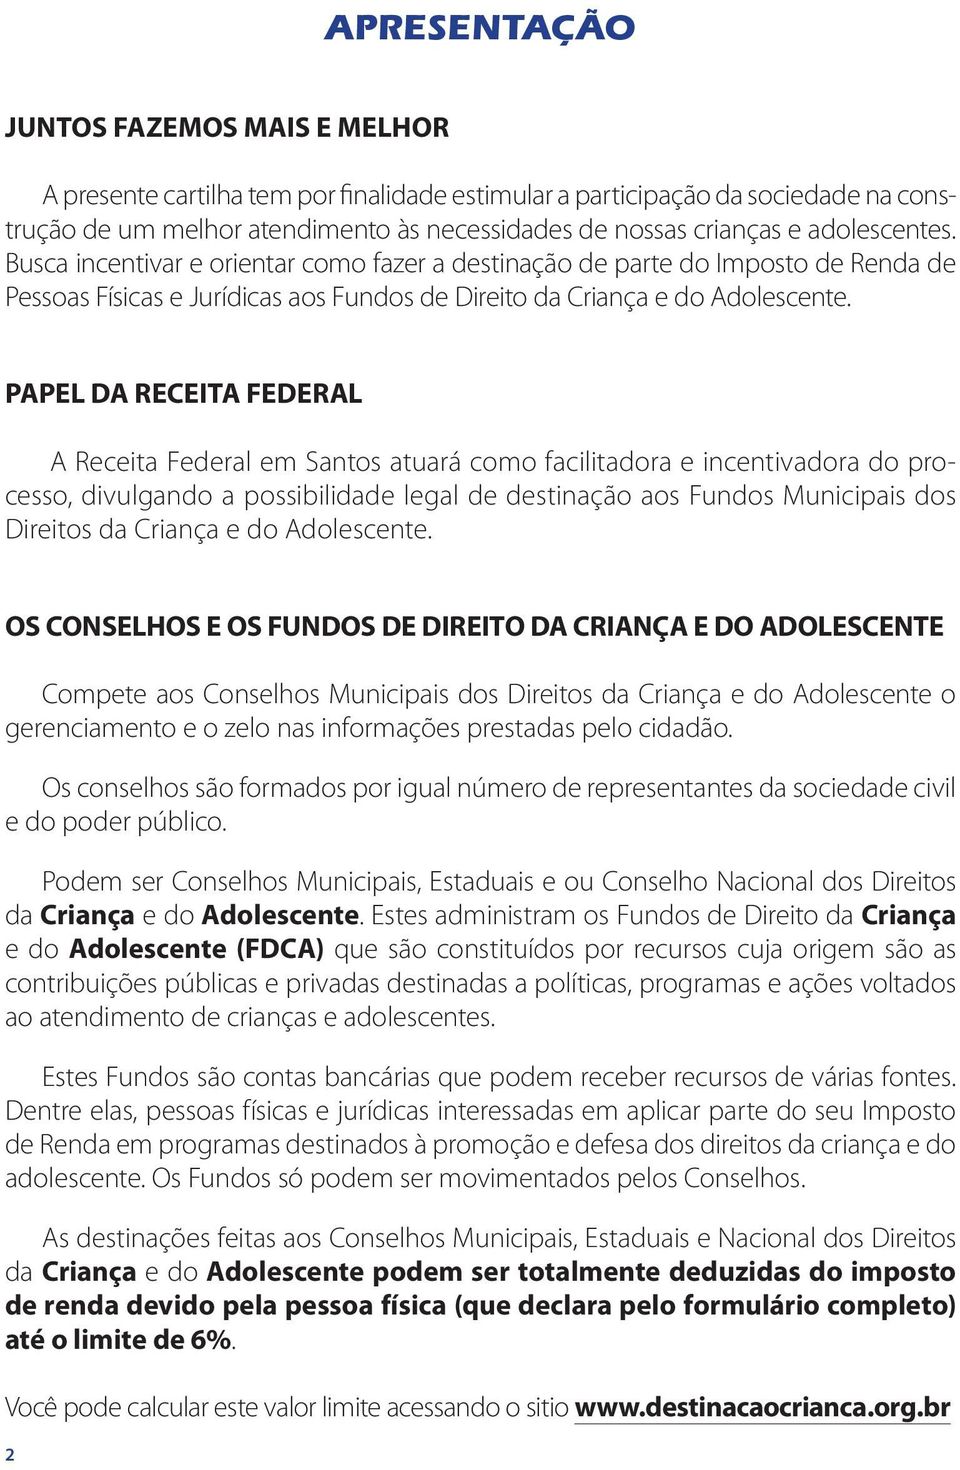 PAPEL DA RECEITA FEDERAL A Receita Federal em Santos atuará como facilitadora e incentivadora do processo, divulgando a possibilidade legal de destinação aos Fundos Municipais dos Direitos da Criança